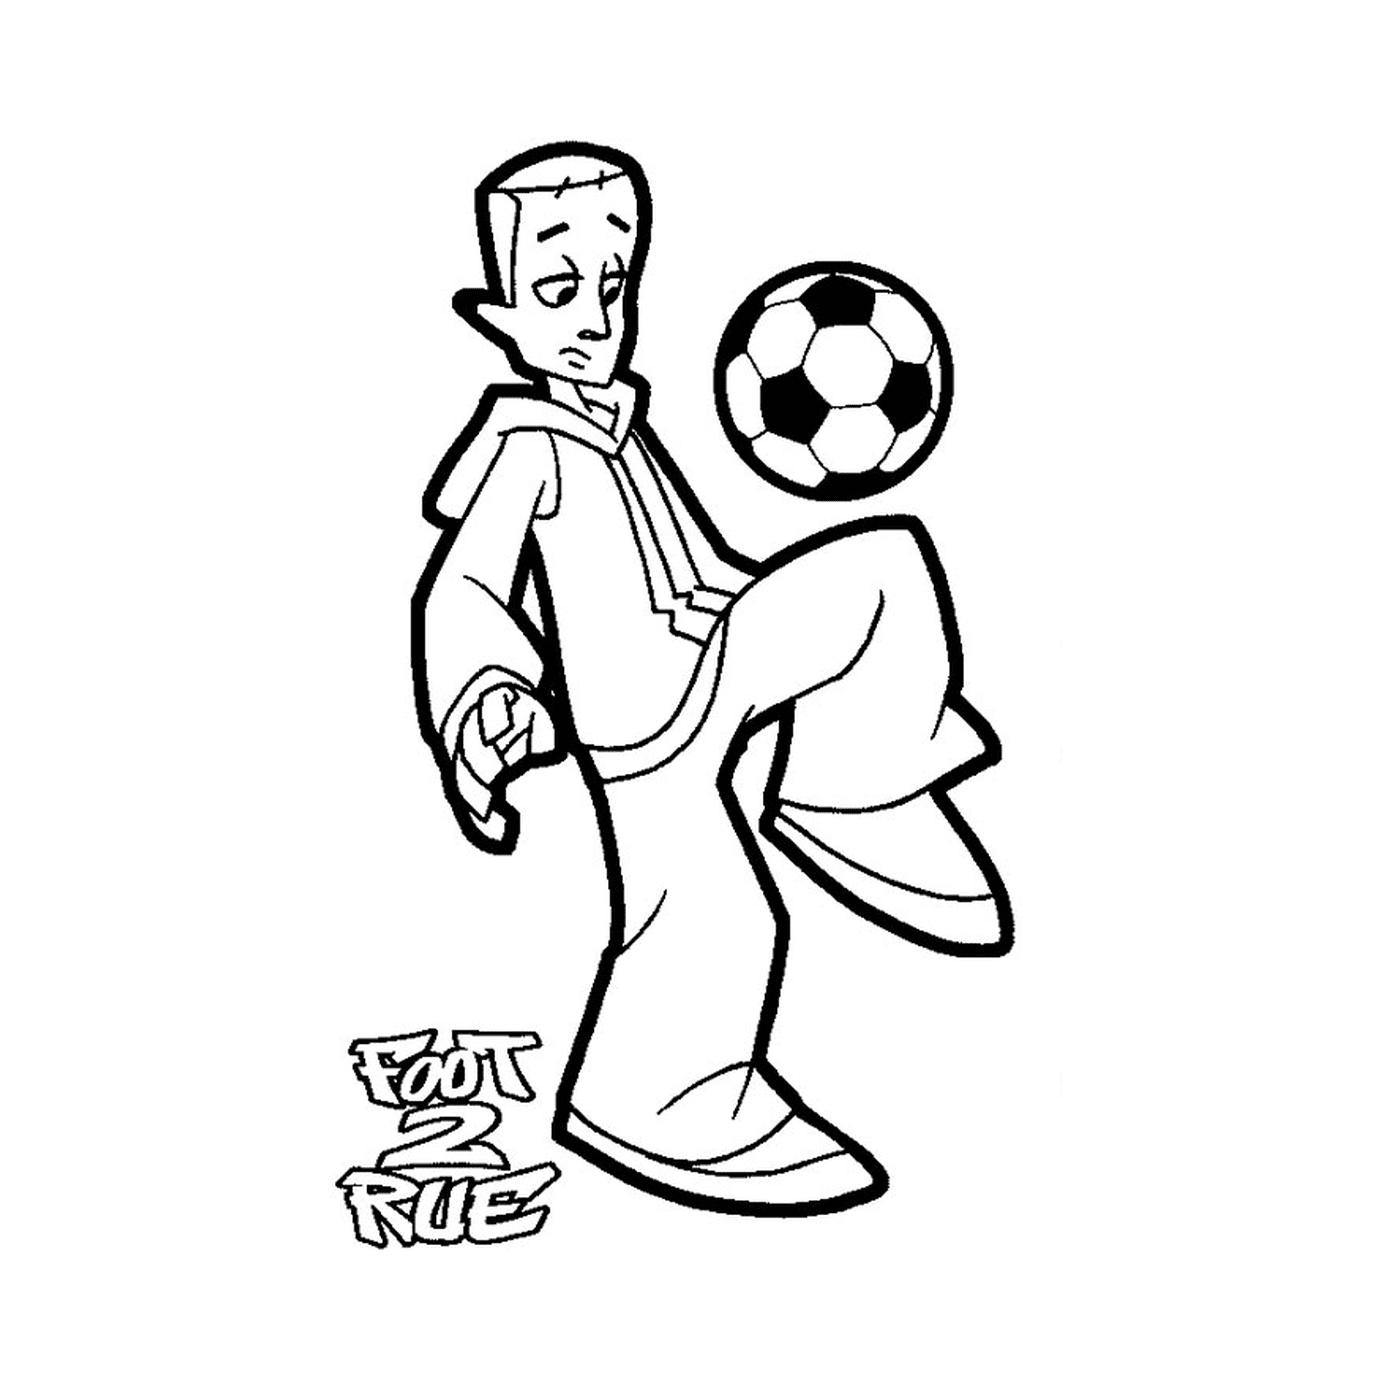   Un homme joue au football dans la rue 